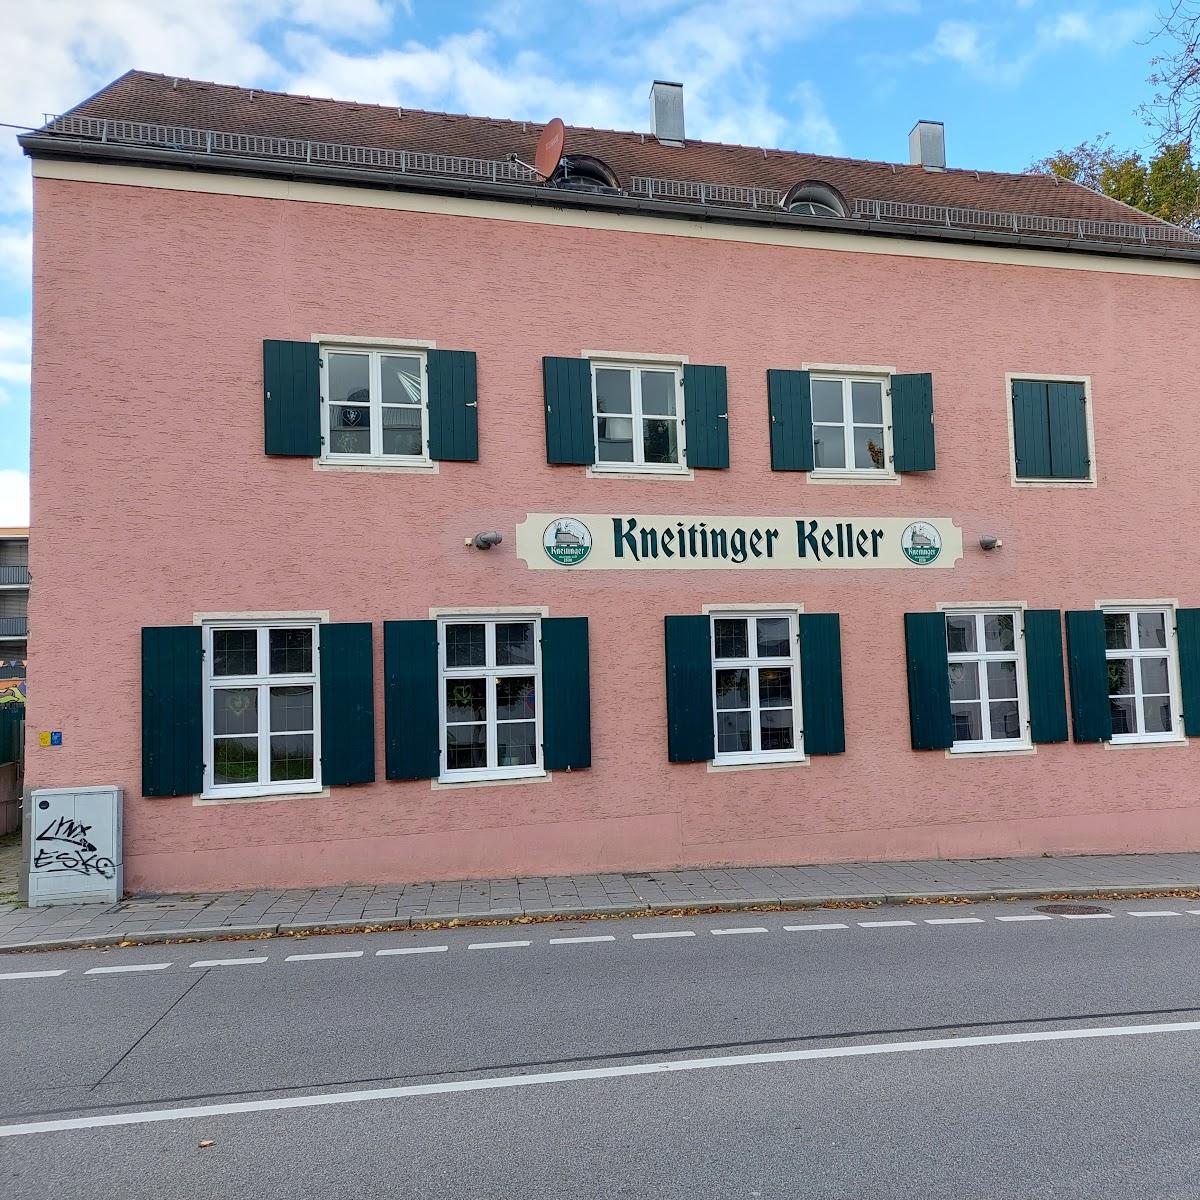 Restaurant "Kneitinger Keller" in Regensburg